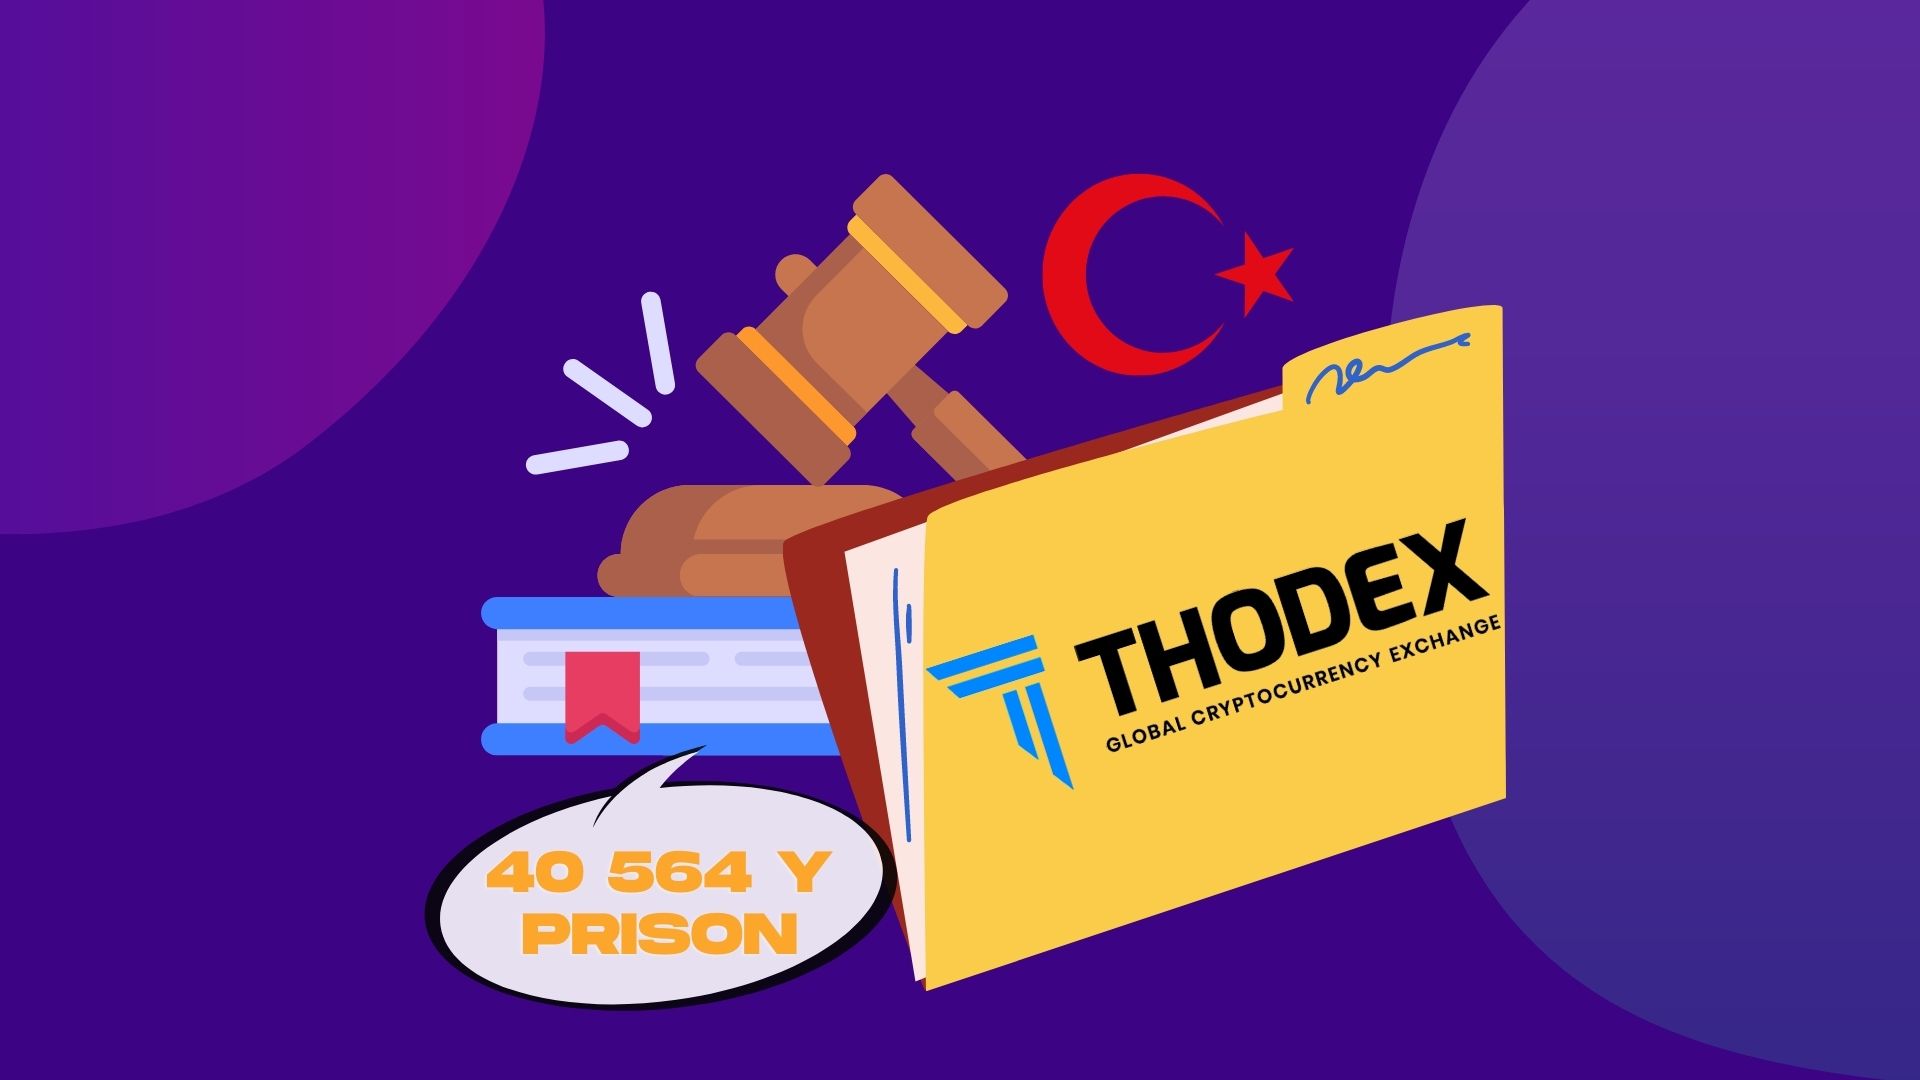 Турция закончила расследование и требует 40 564 лет тюрьмы для 21 сотрудника крипто-биржи Thodex